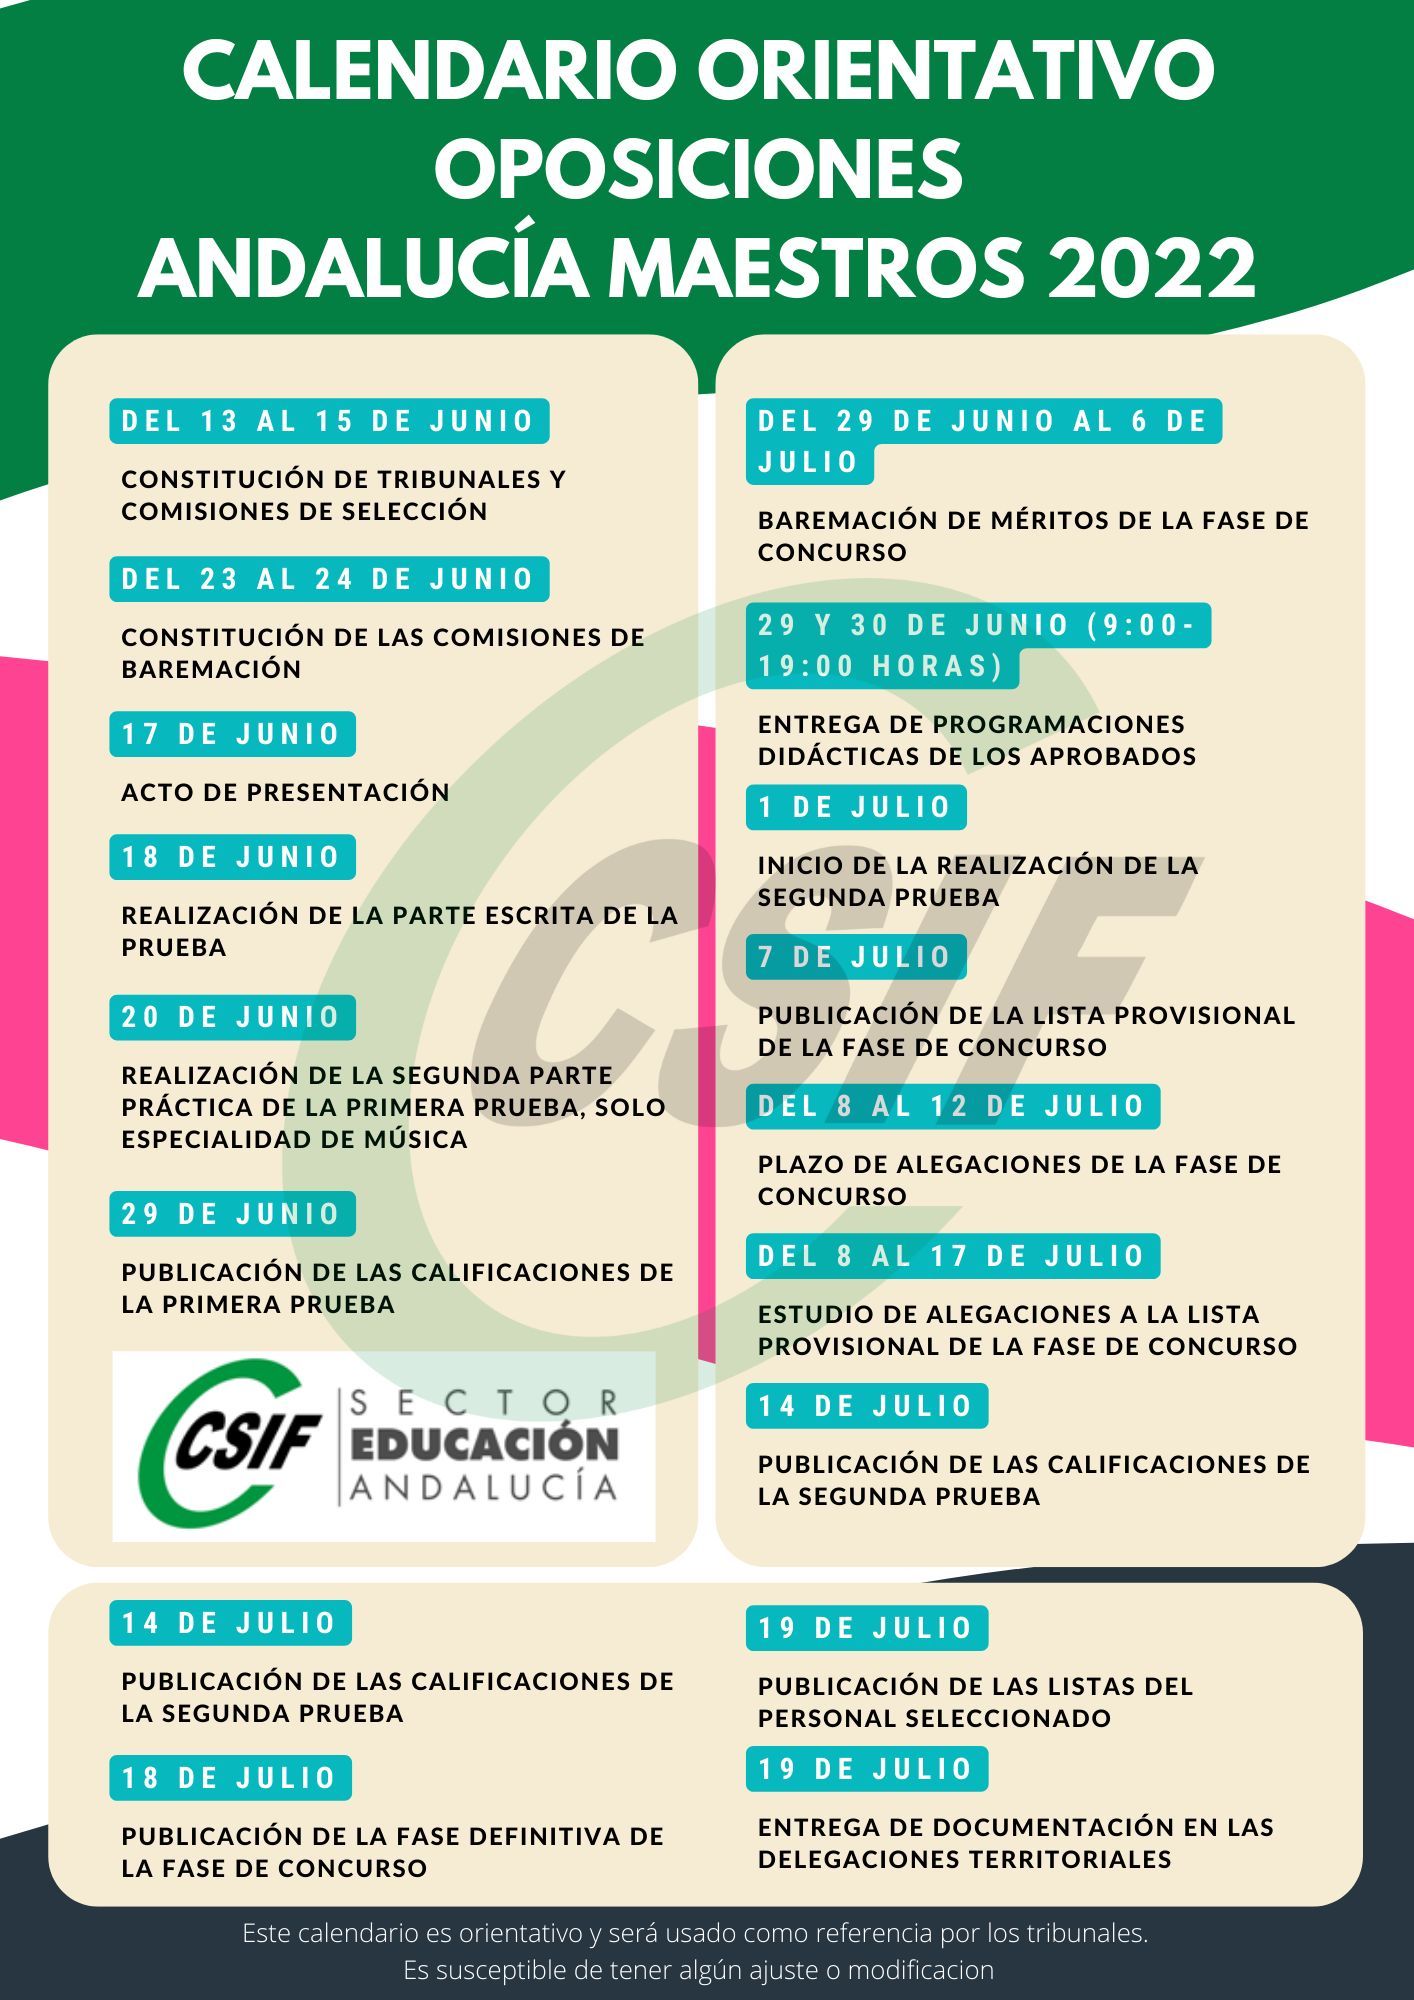 Calendario orientativo de las oposiciones elaborado por CSIF.